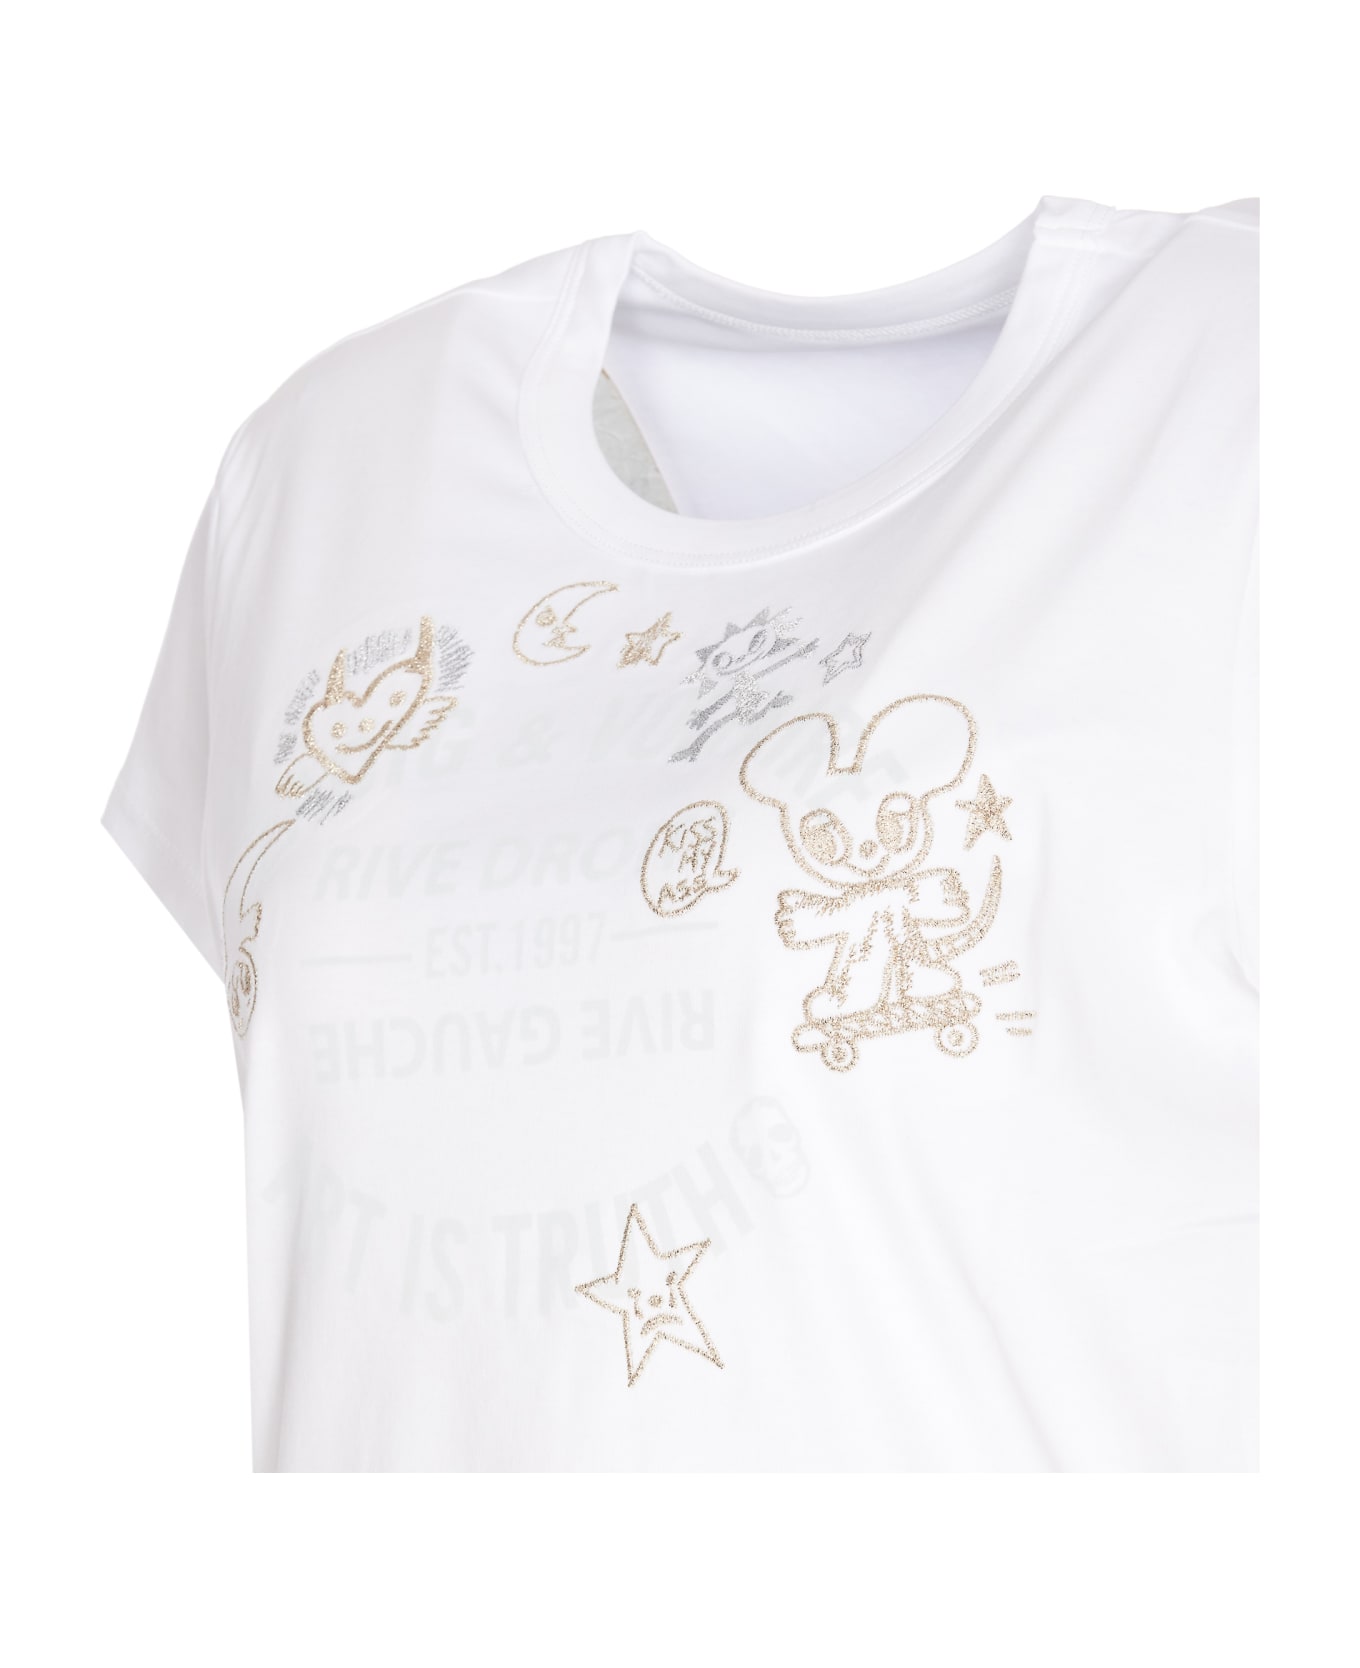 Zadig & Voltaire Woop Ico Blason T-shirt - White Tシャツ